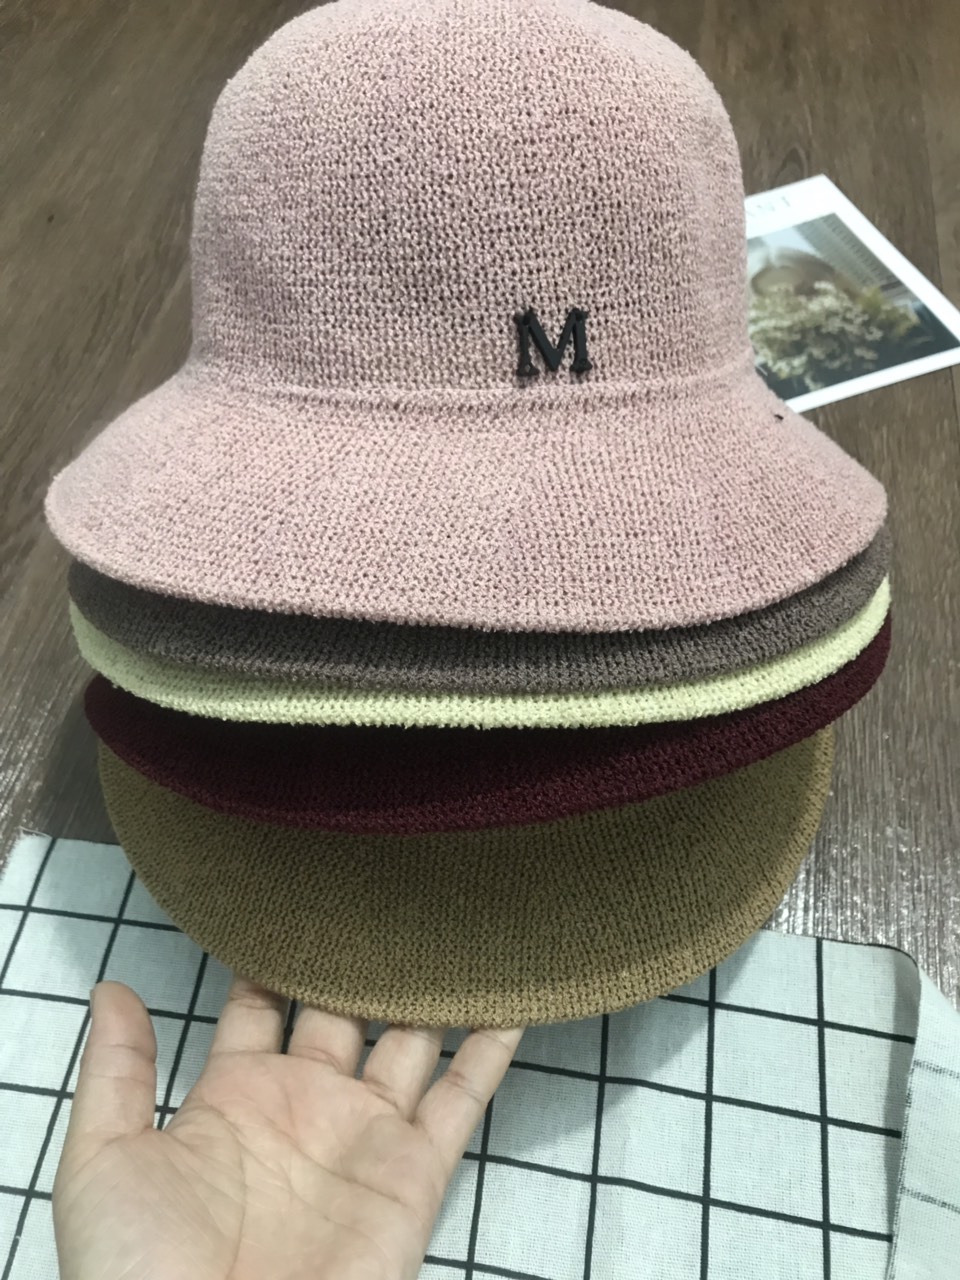 Mũ cói cho bạn gái thêm xinh mẫu chữ M